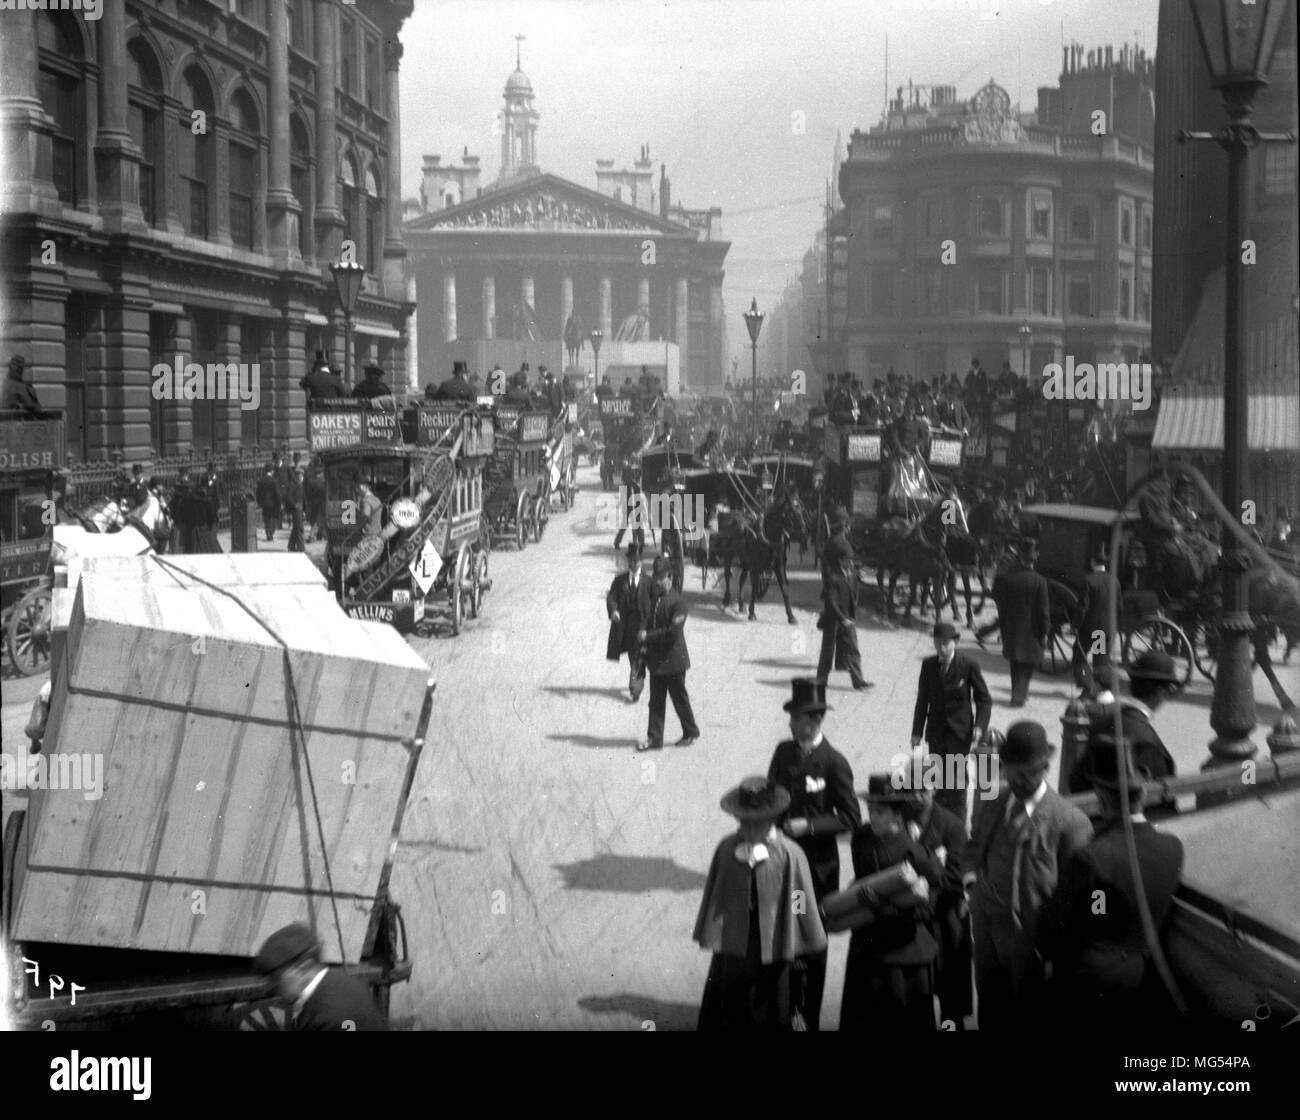 Vieux Londres victorien historique : les gens qui vaquent à leurs affaires dans les rues de la ville de Londres du 19ème siècle à Mansion House Street et le Royal Exchange, en 1896 Banque D'Images